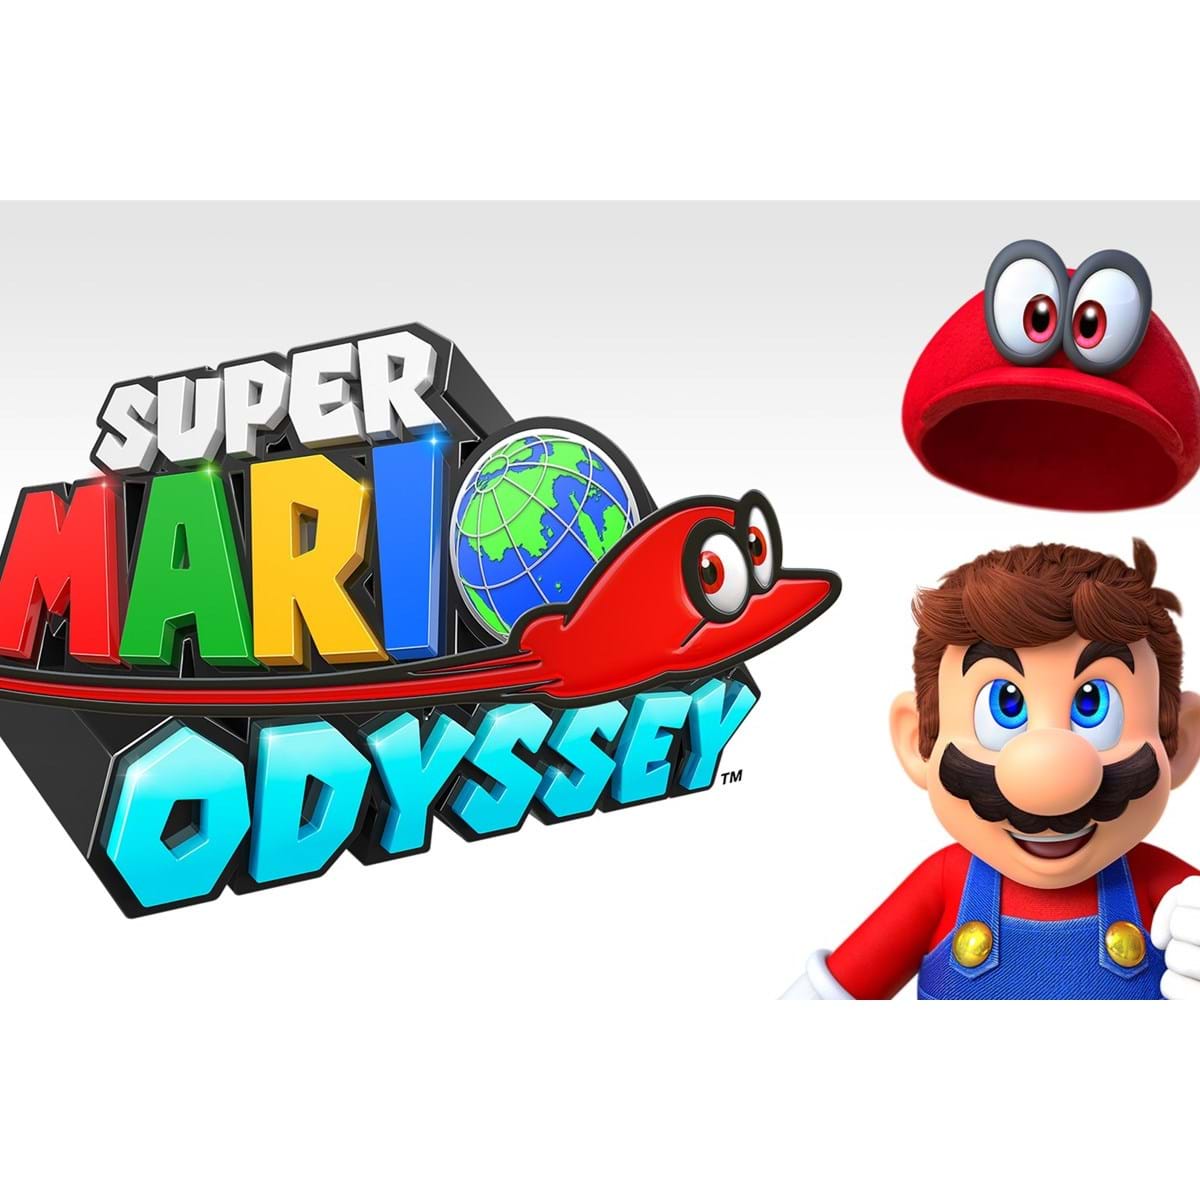 Nintendo revela novos detalhes sobre itens, gameplay, competição